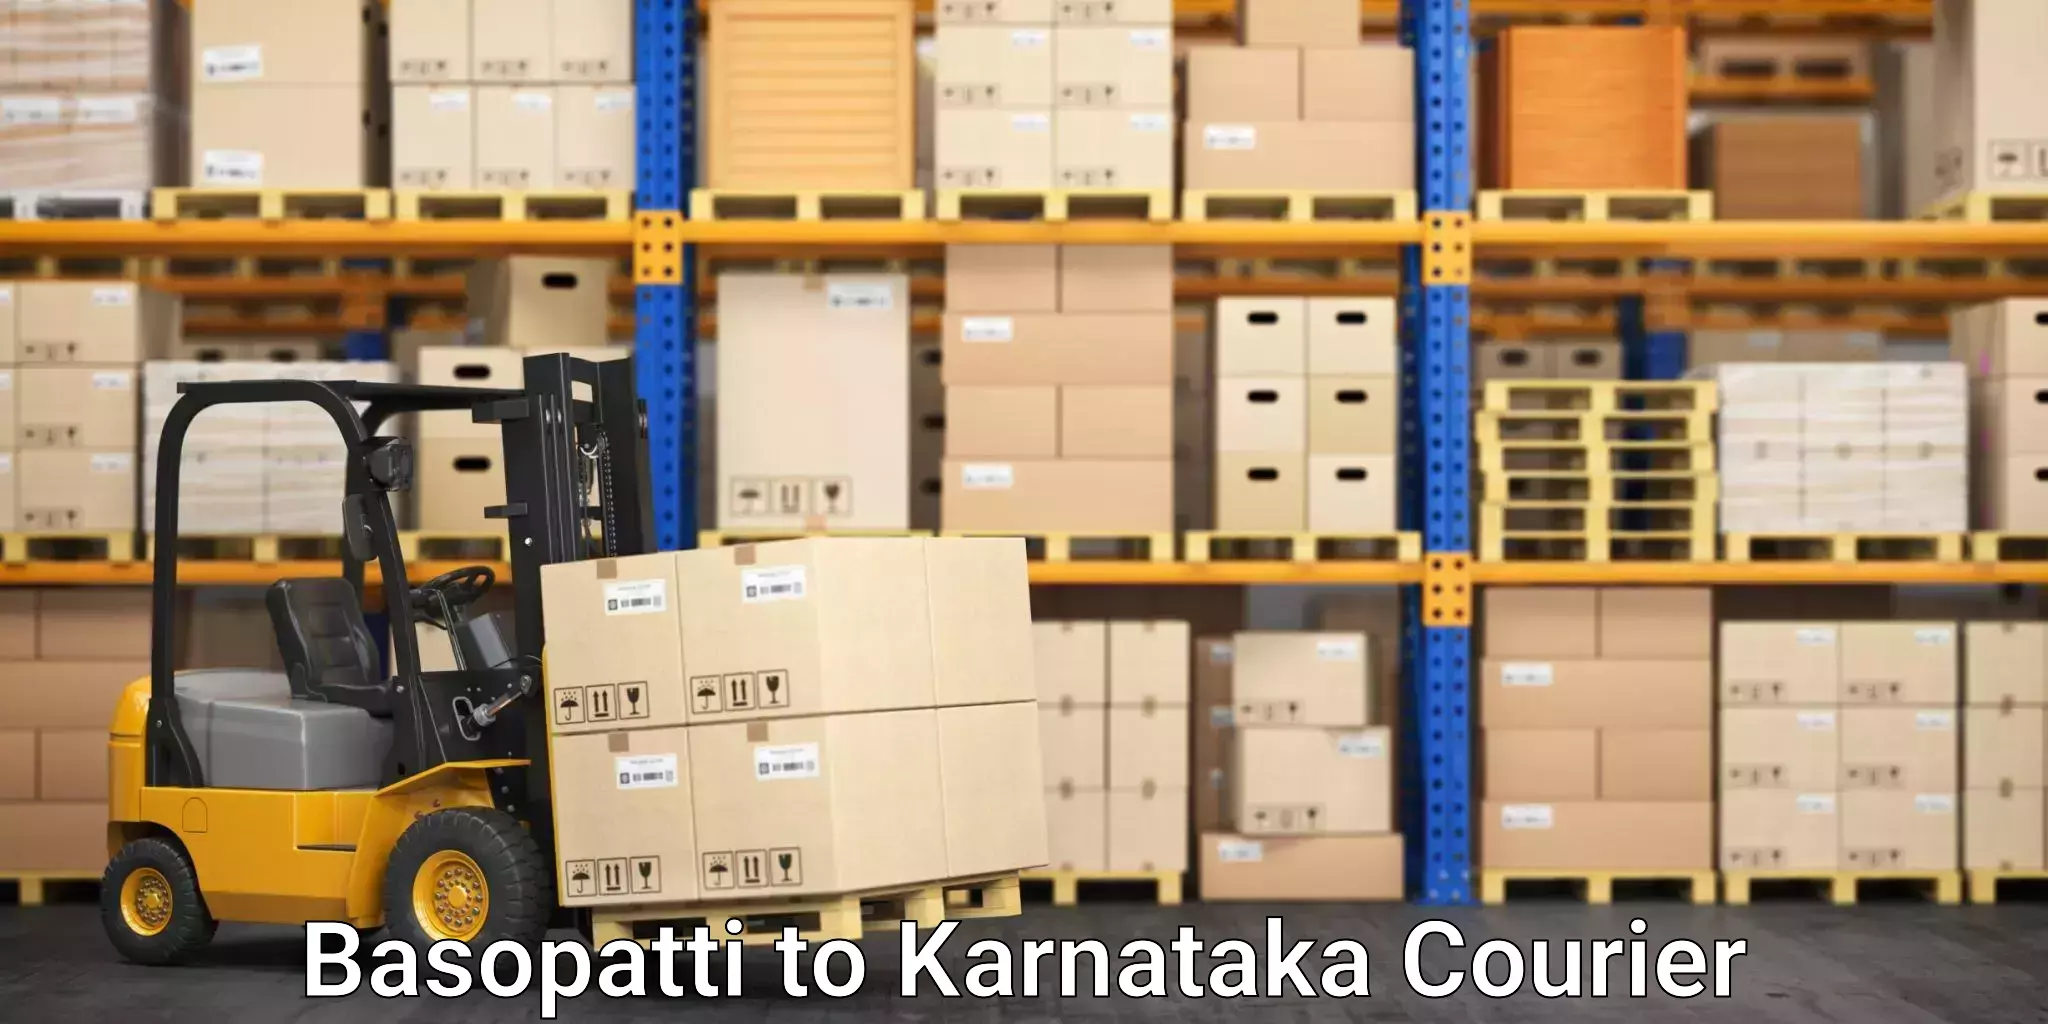 Budget-friendly movers Basopatti to Karnataka